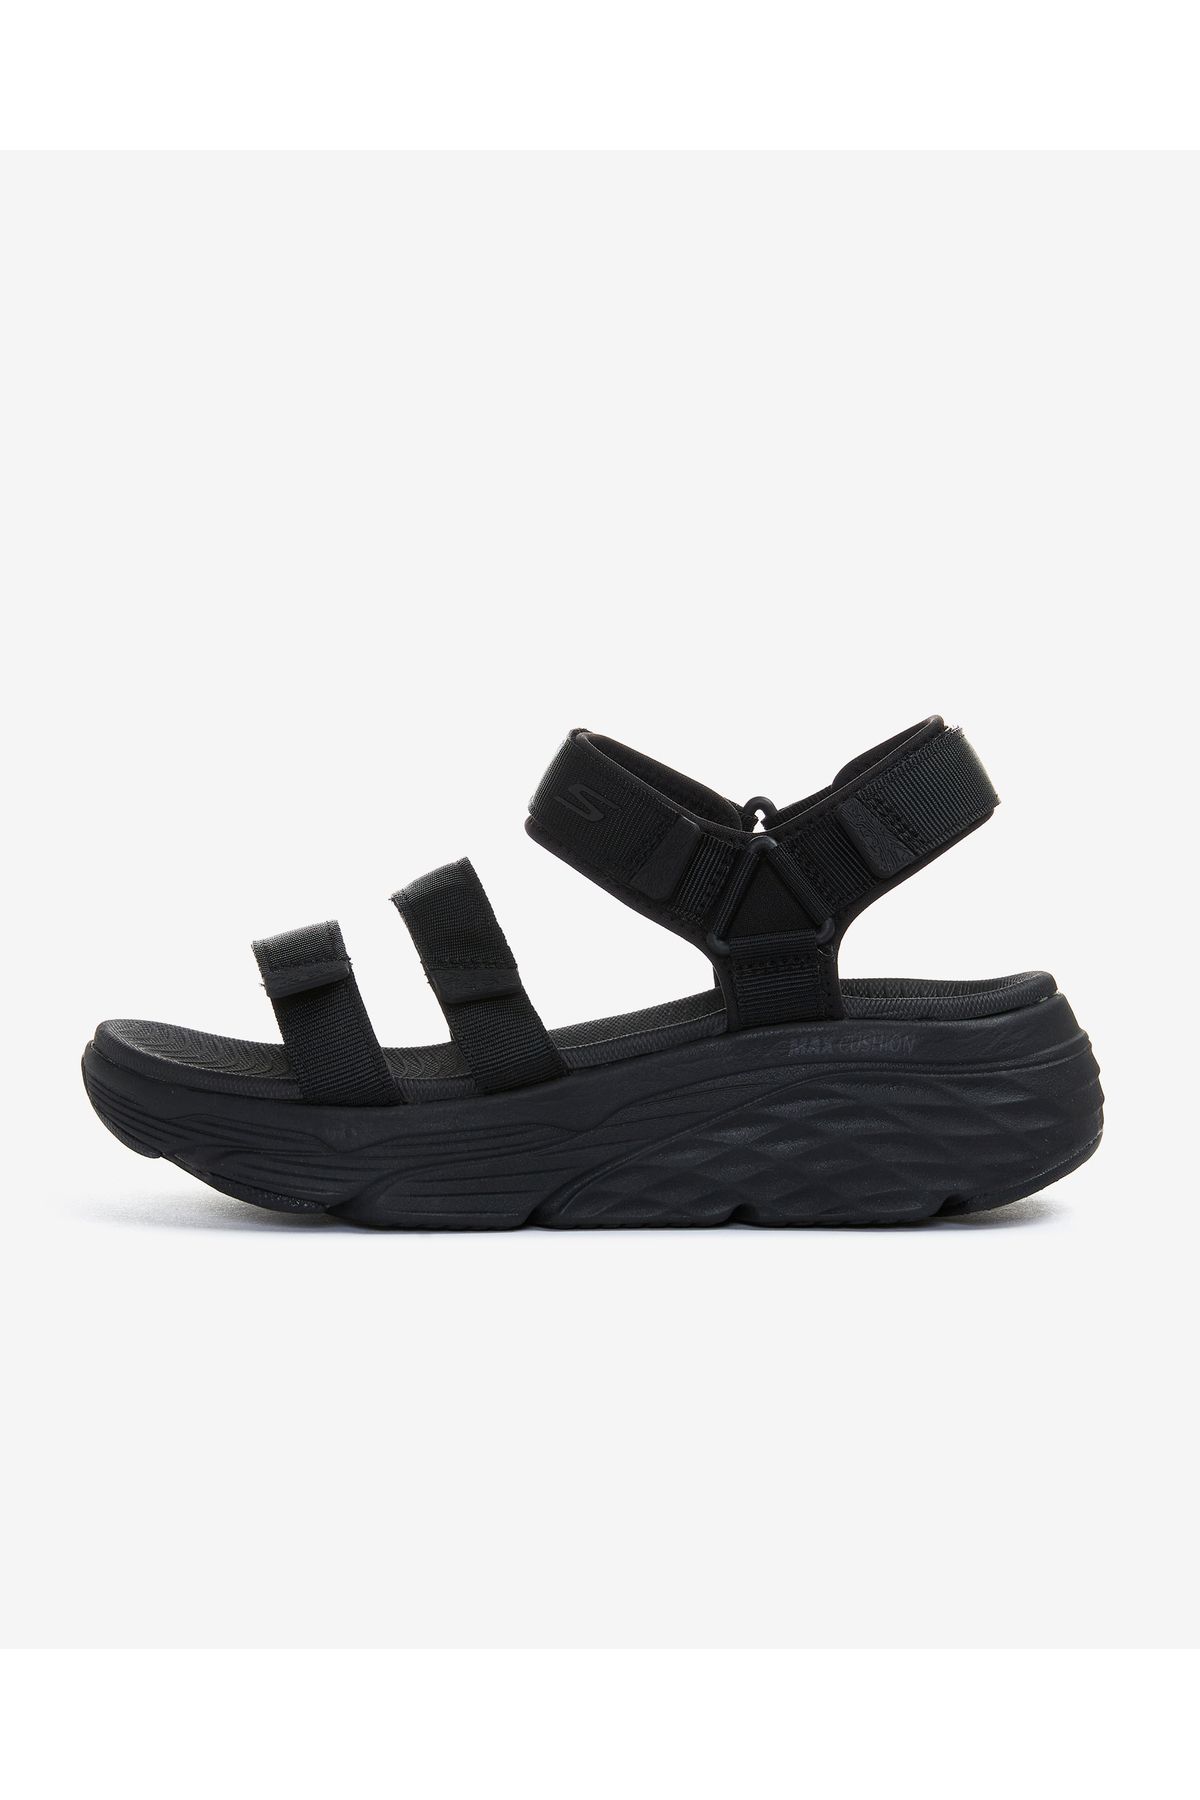 Skechers Max Cushioning - Lured Kadın Siyah Sandalet 140218 Bbk